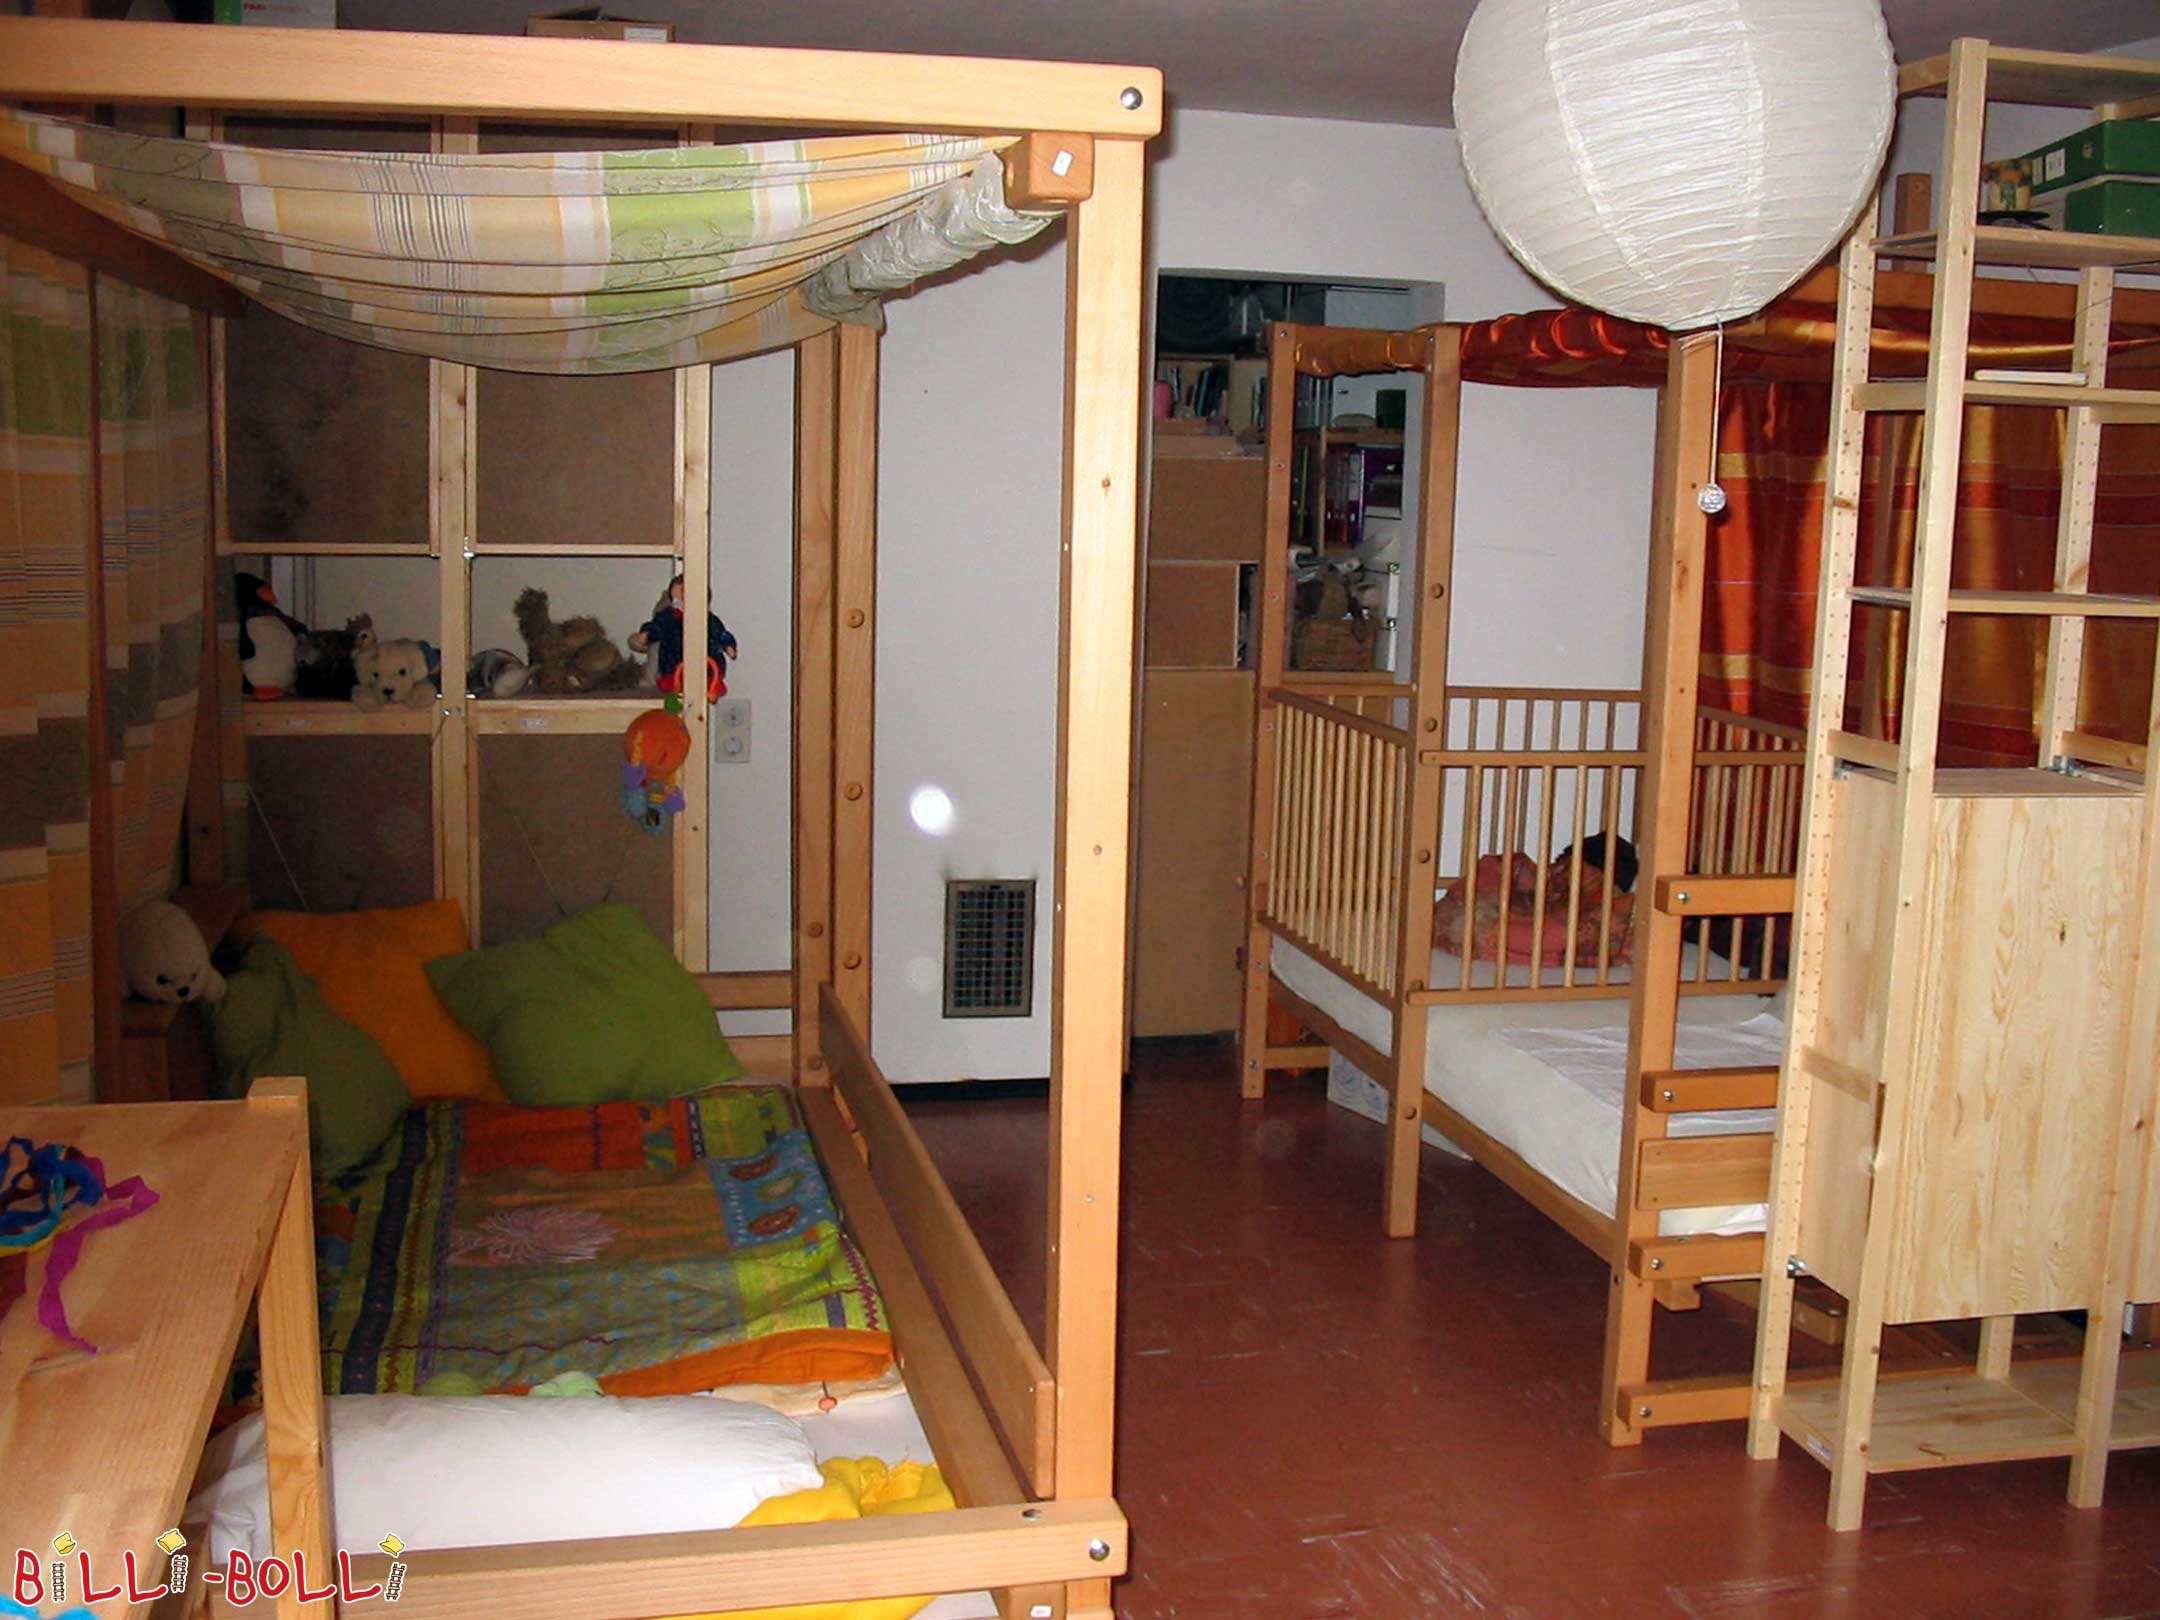 Duas camas loft crescendo com a criança na altura 2, configuradas como um … (Cama alta crescendo com a criança)